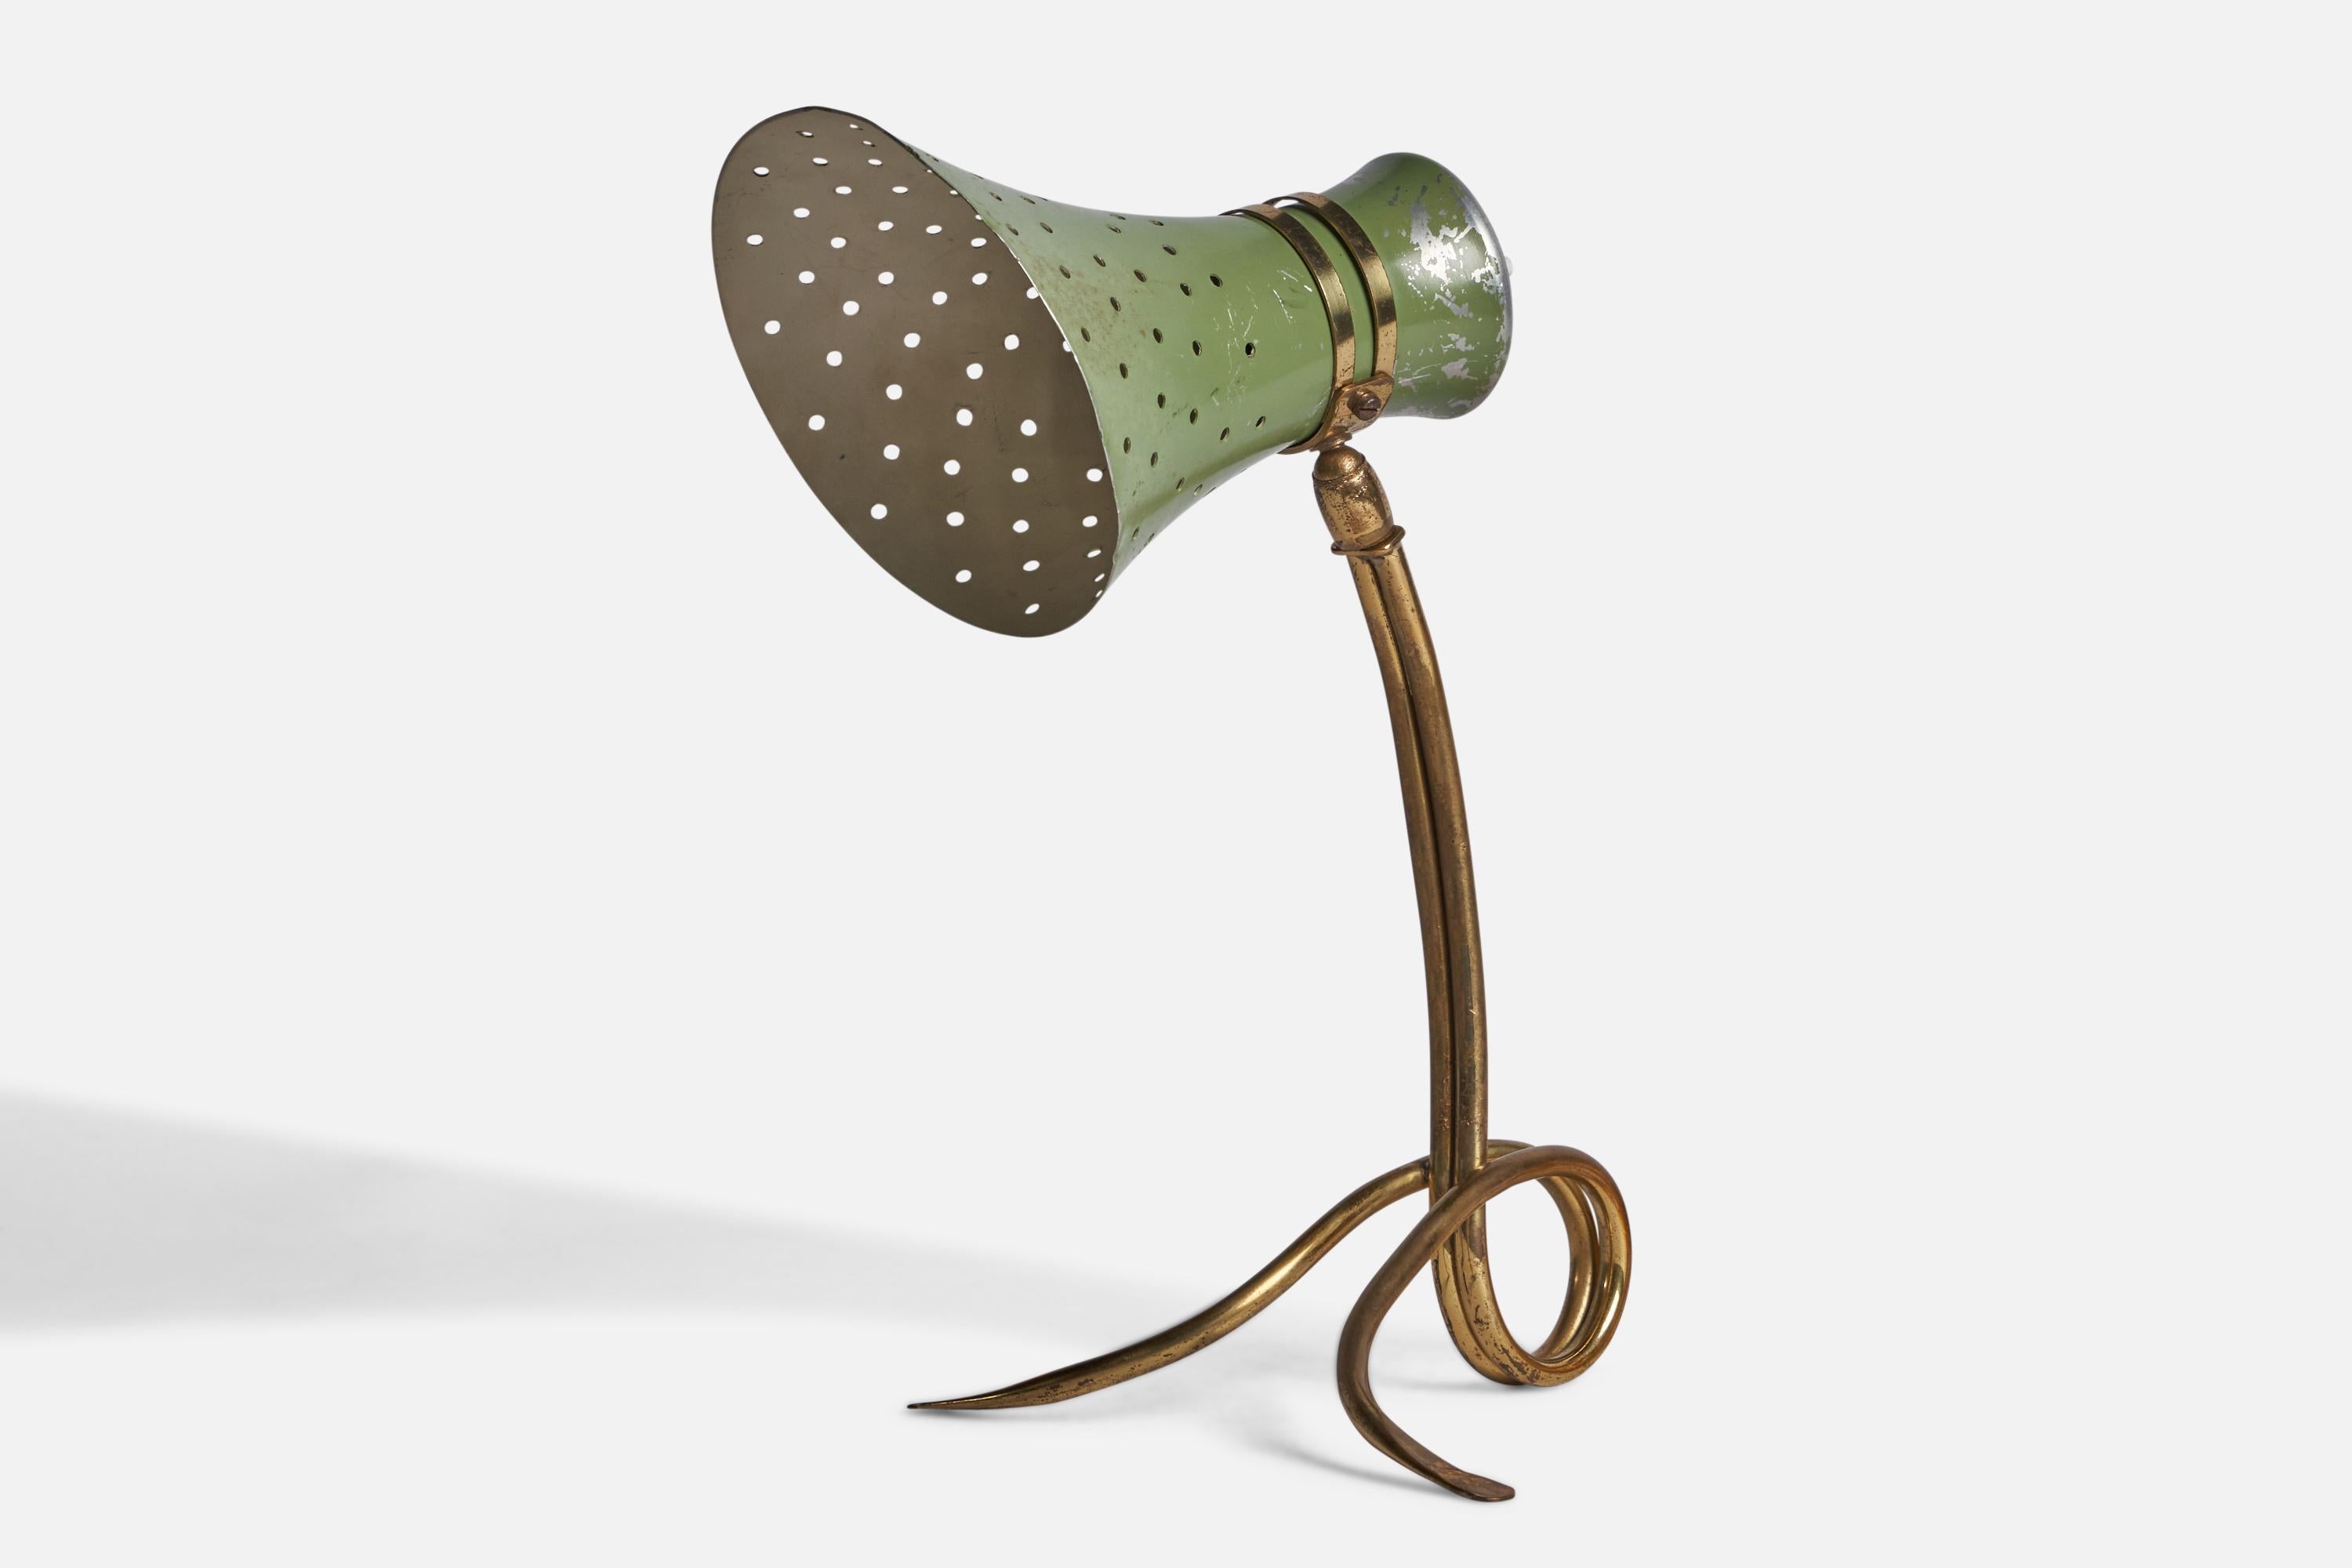 Lampe de table en laiton et métal laqué vert, conçue et produite en Italie, années 1940.
Dimensions globales (pouces) : 12,5